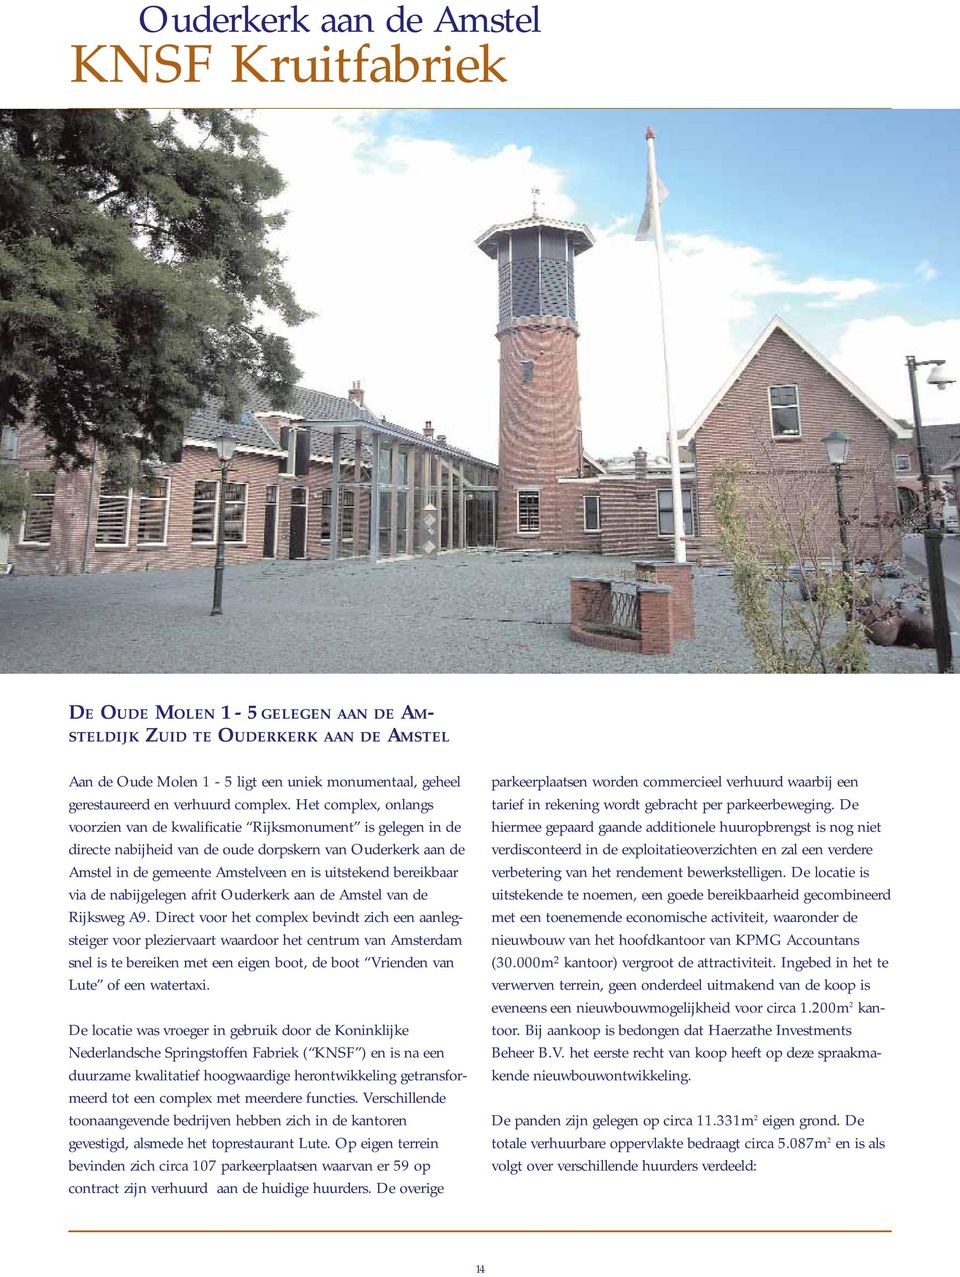 Het complex, onlangs voorzien van de kwalificatie Rijksmonument is gelegen in de directe nabijheid van de oude dorpskern van Ouderkerk aan de Amstel in de gemeente Amstelveen en is uitstekend